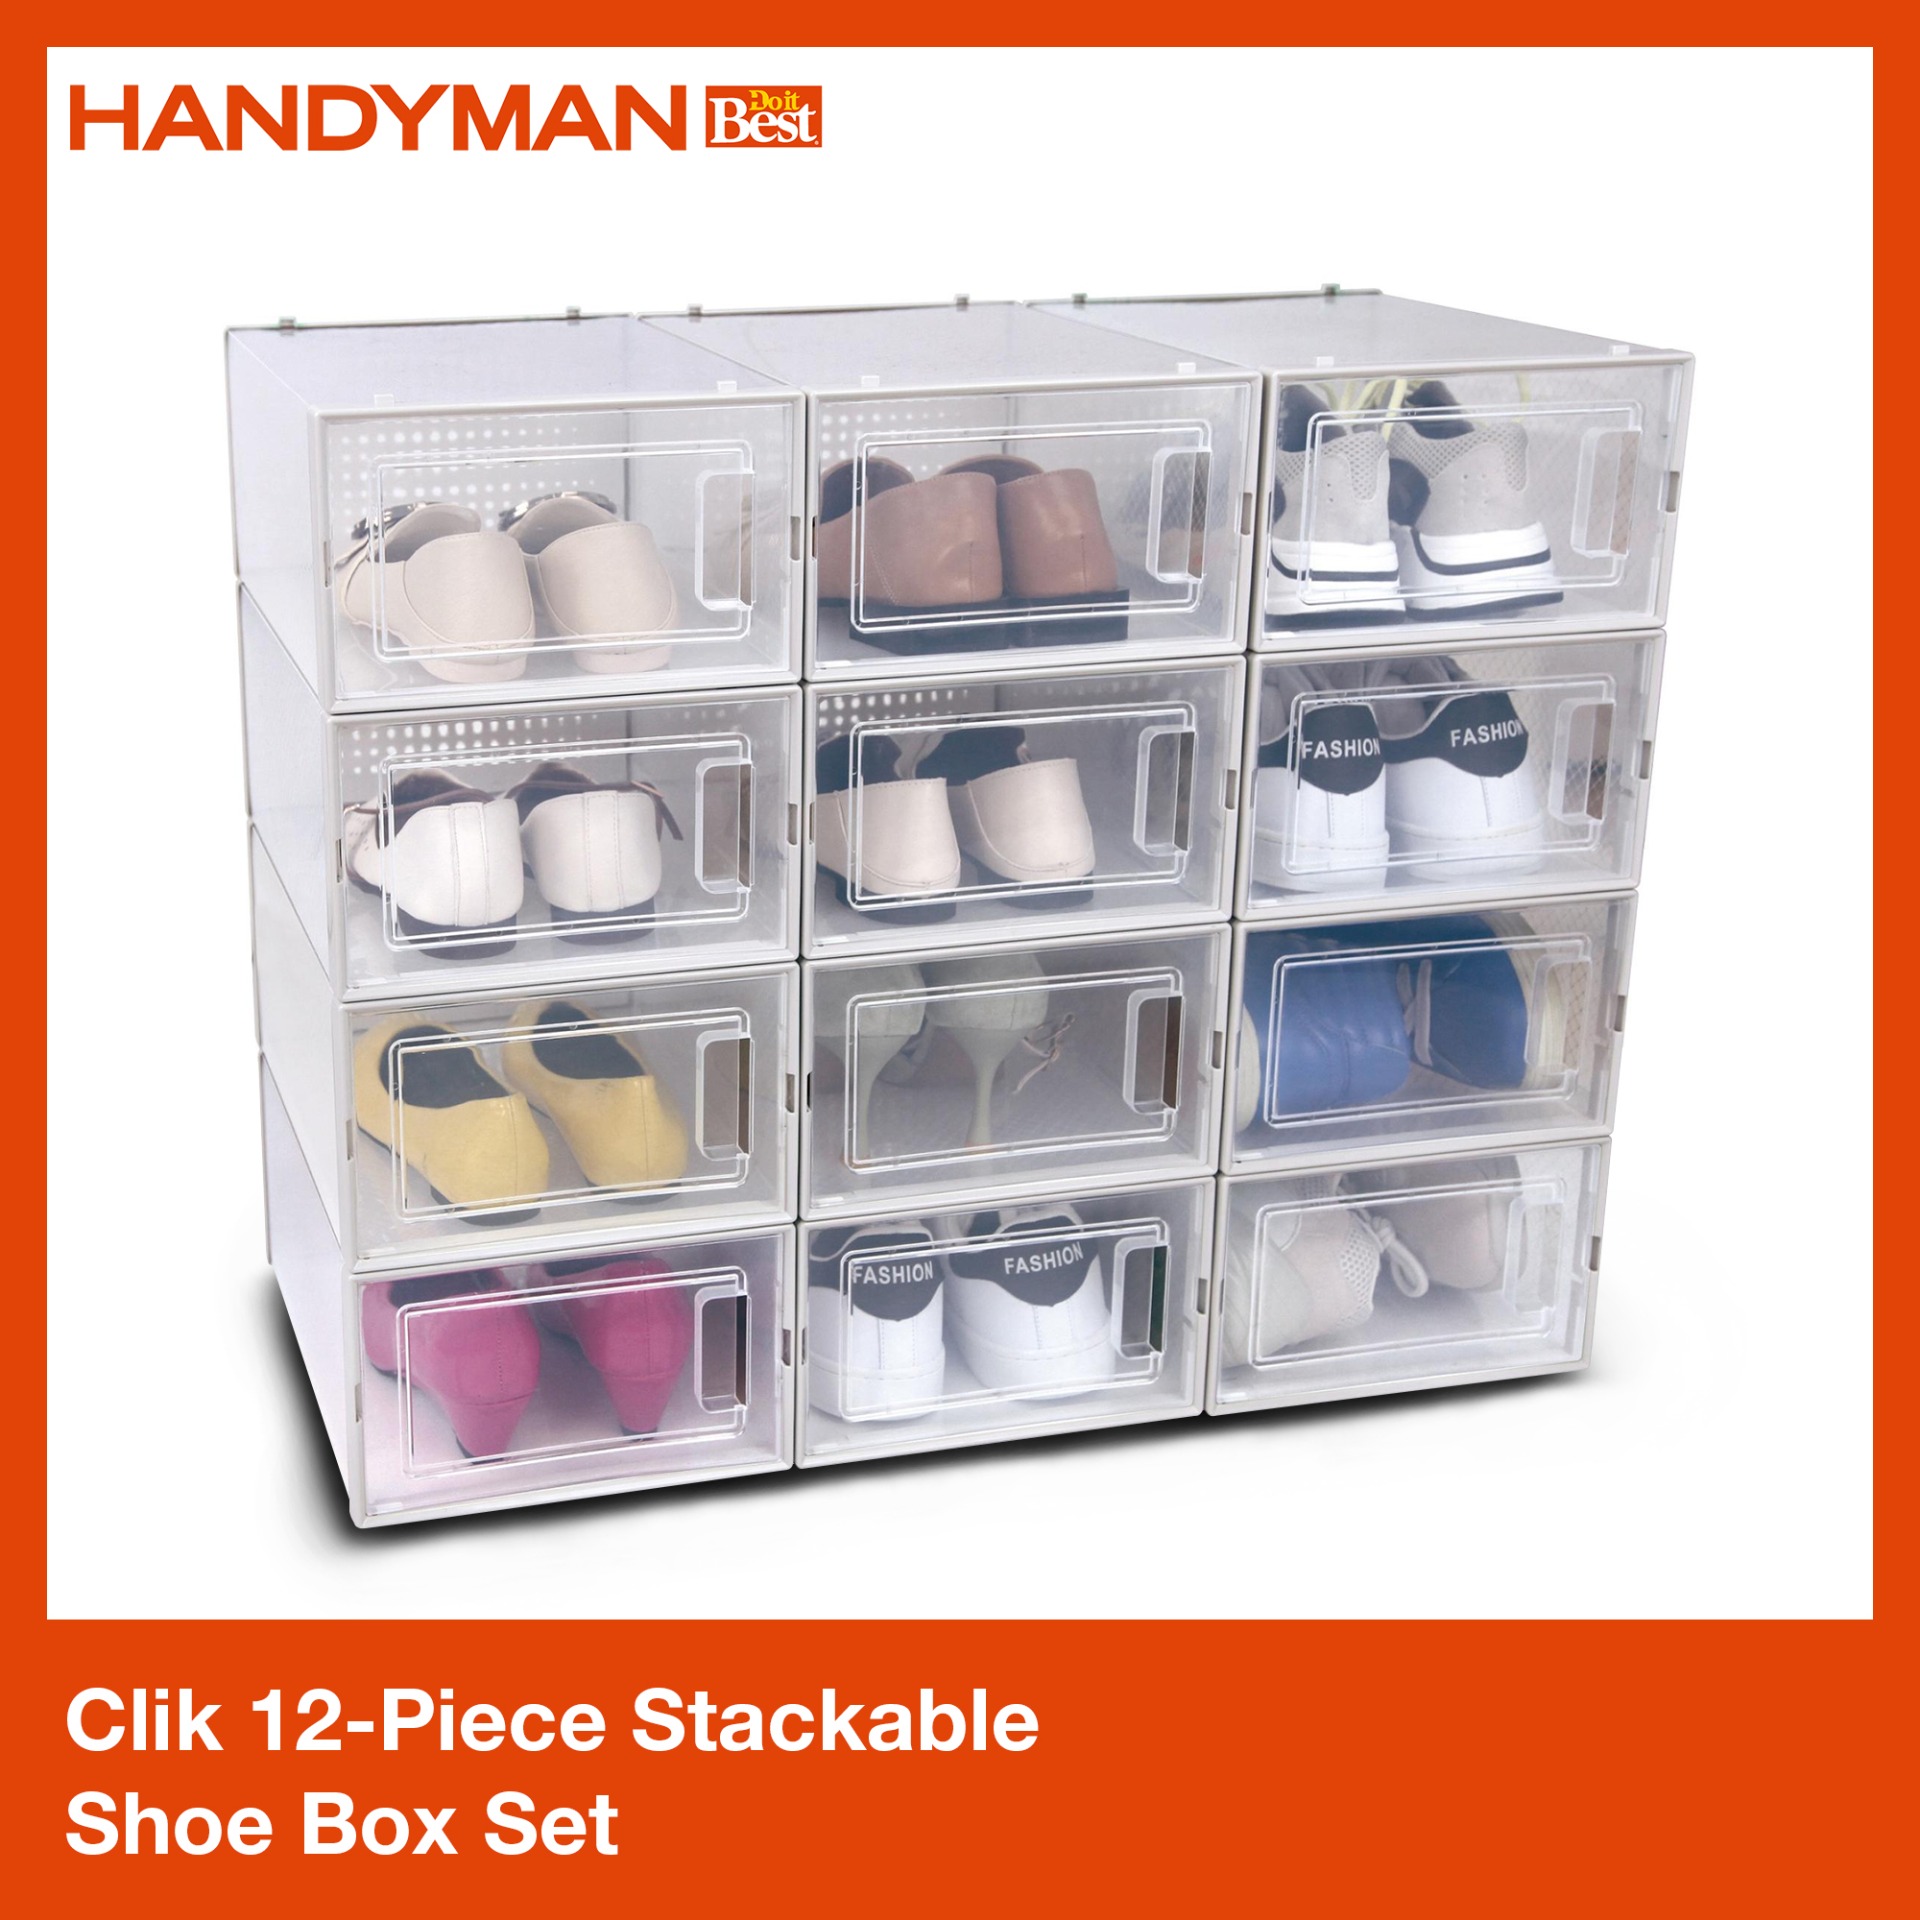 Clik 12-Piece Stackable Shoe Box Set 